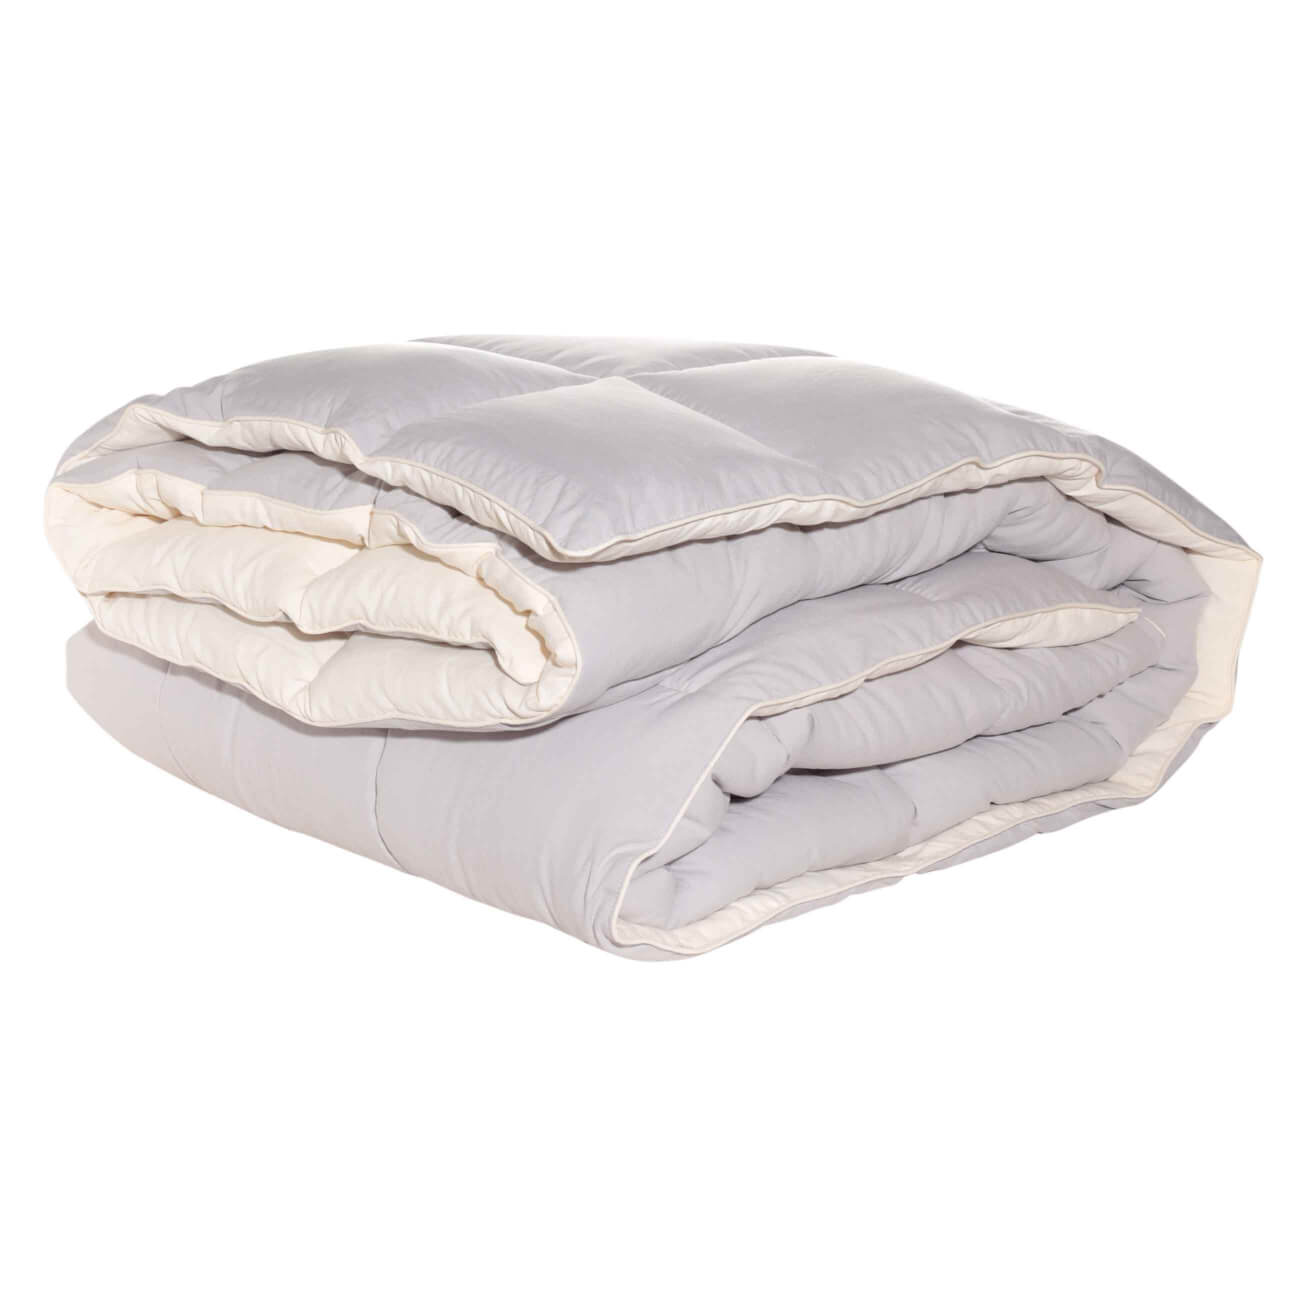 Одеяло, 200х220 см, микрофибра/холлофайбер, бежевое/молочное, Hollow fiber одеяло 200х220 см микрофибра дакрон молочное cloud fiber